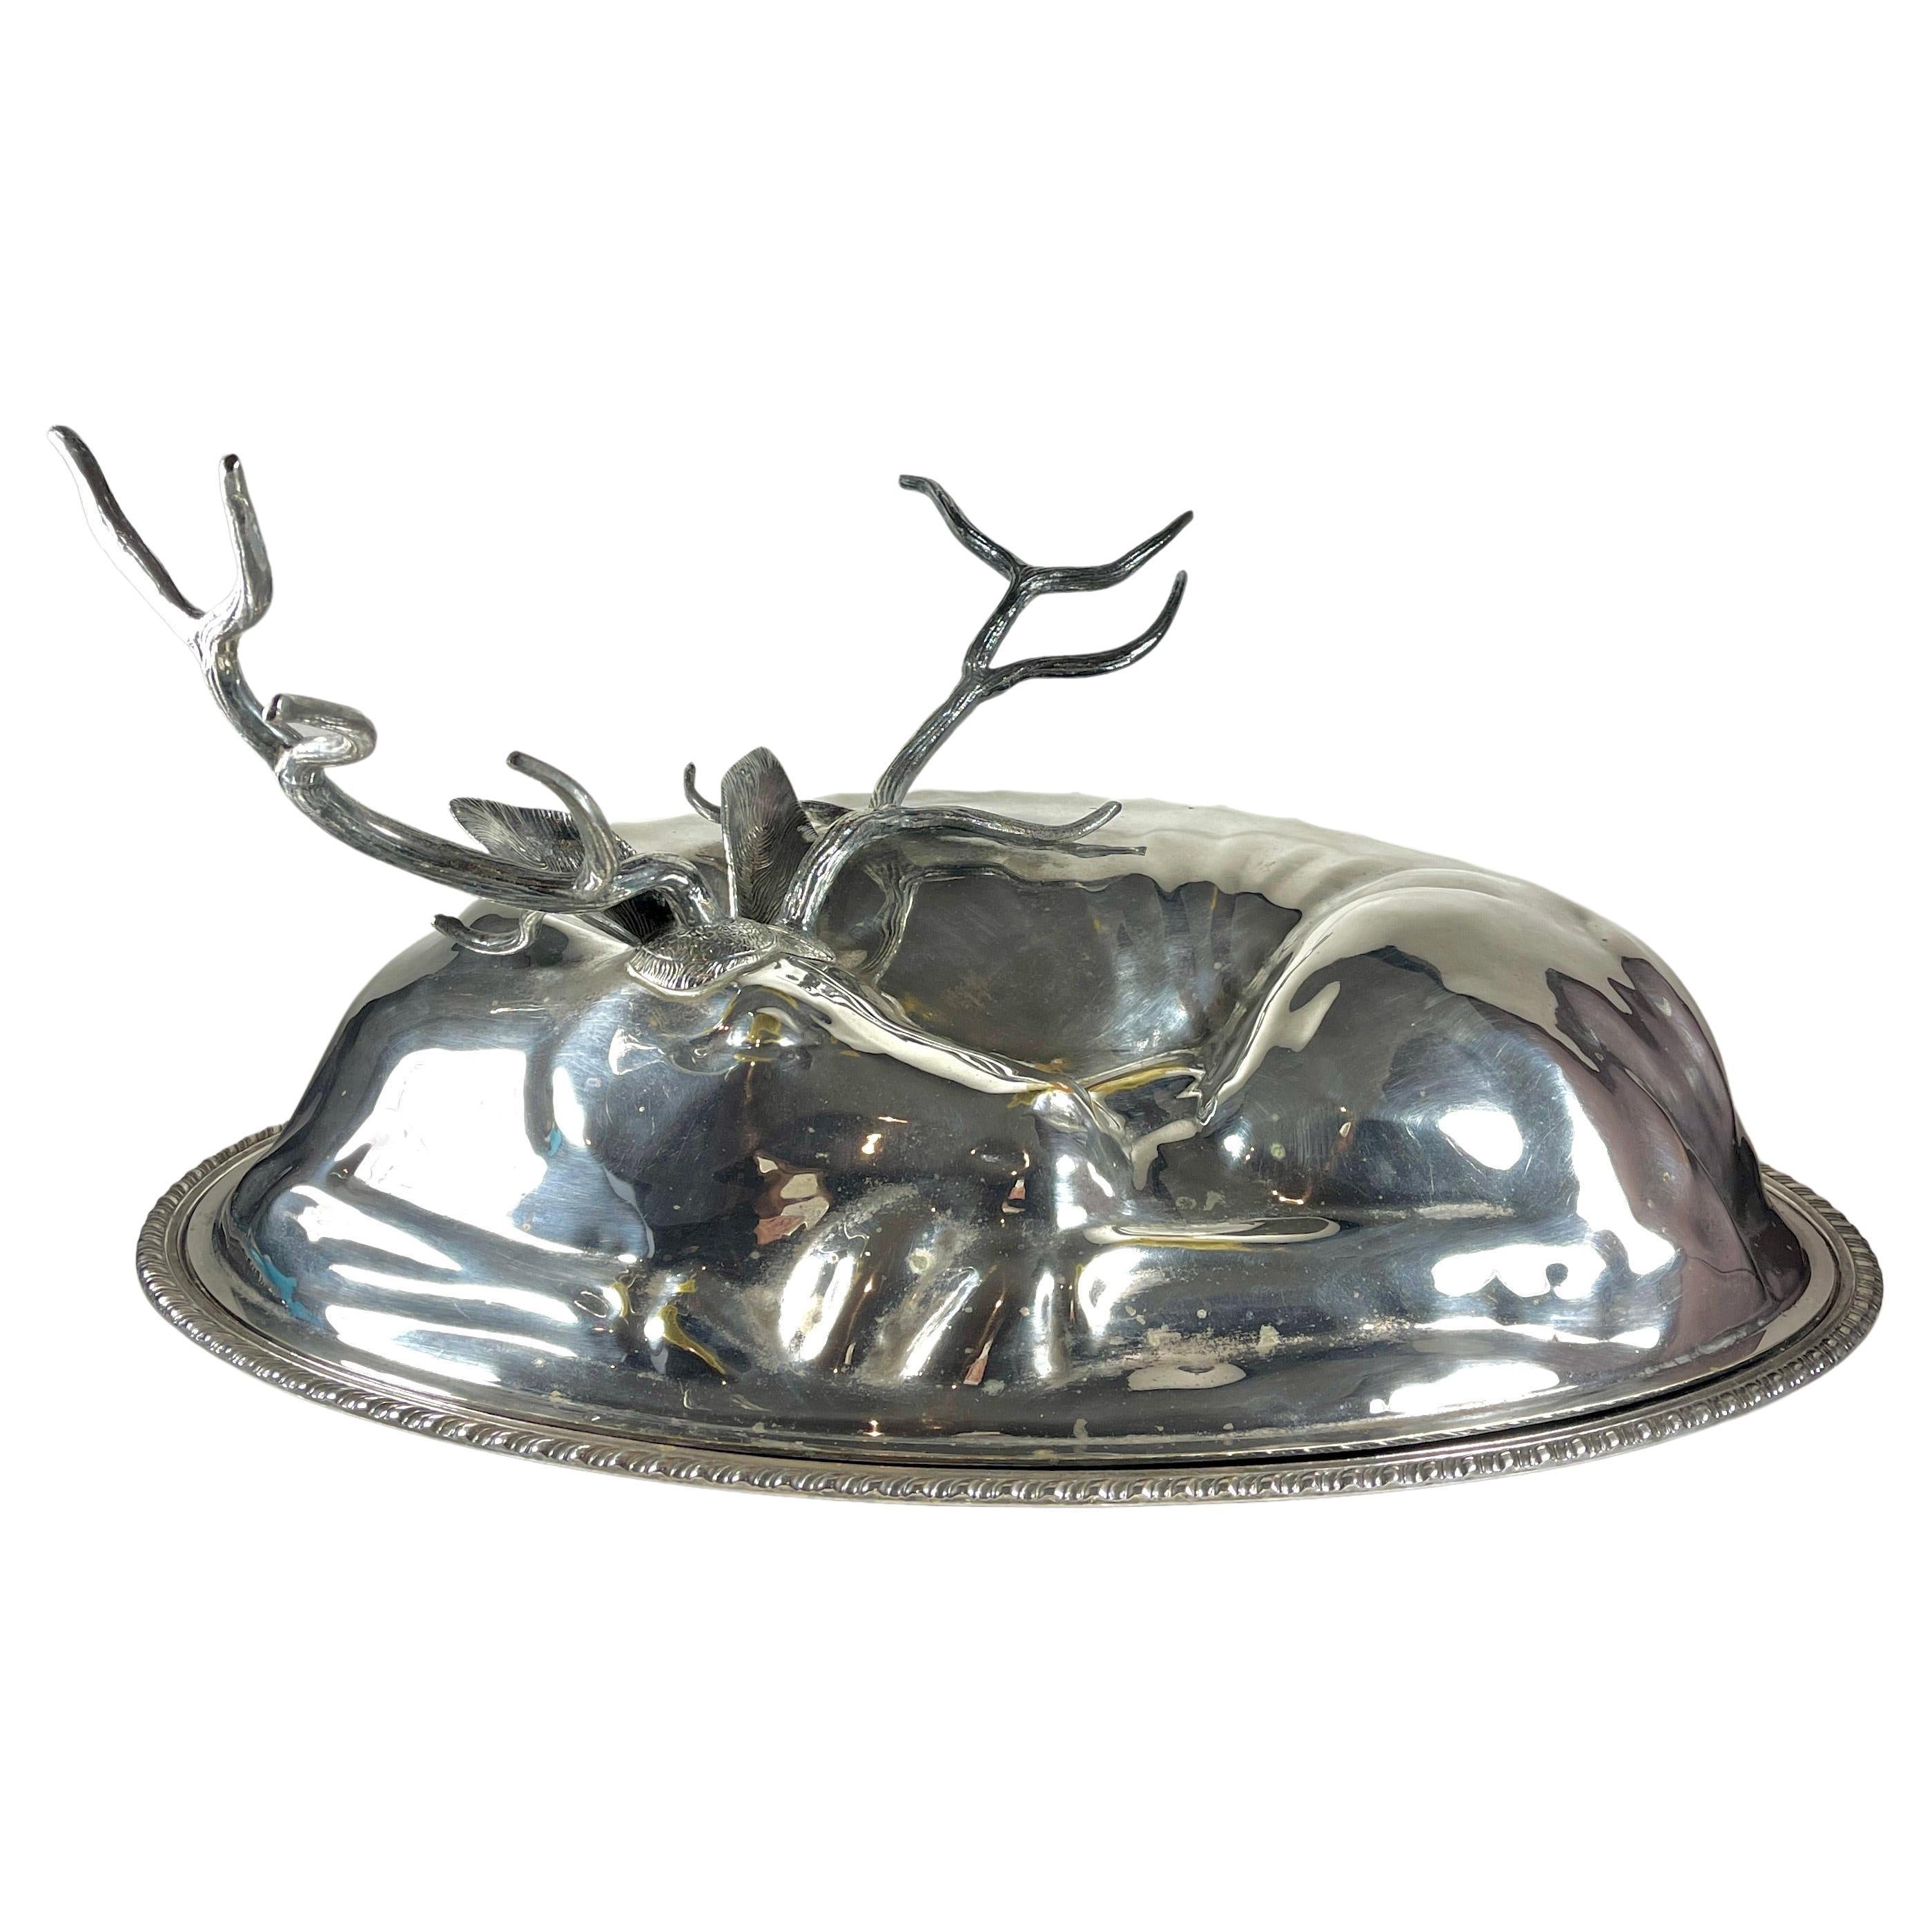 Teghini Firenze Italian Silver Resting Deer Monumental Covered Serving Platter For Sale